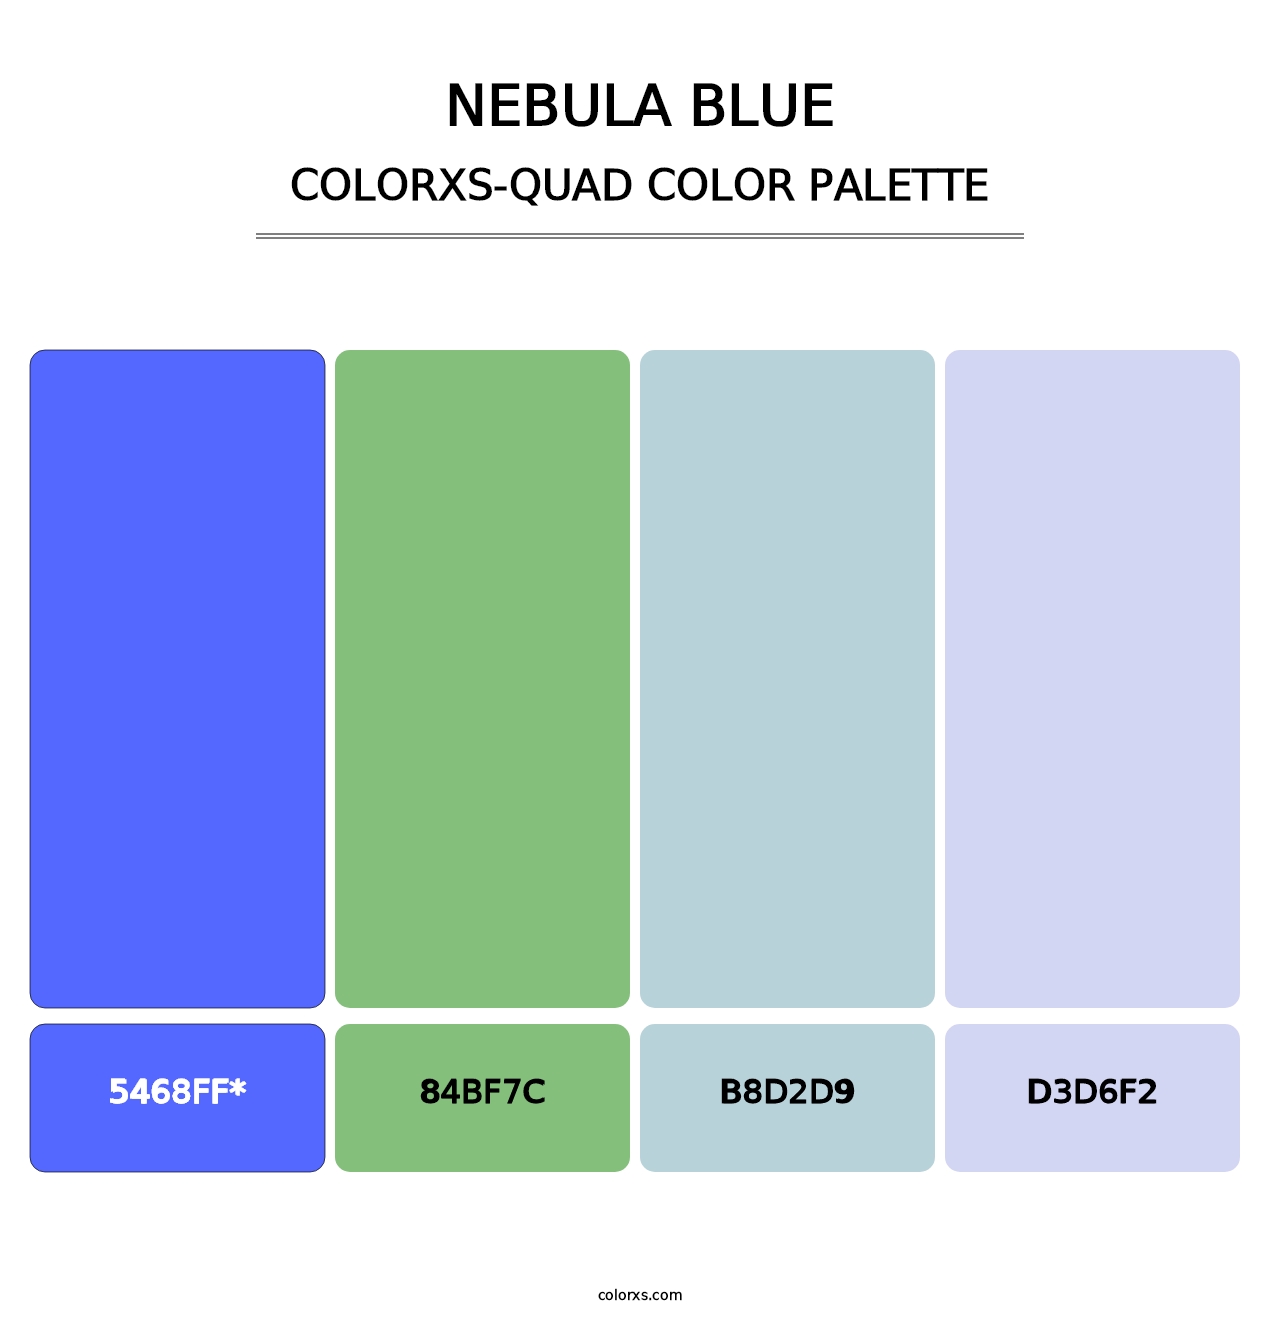 Nebula Blue - Colorxs Quad Palette